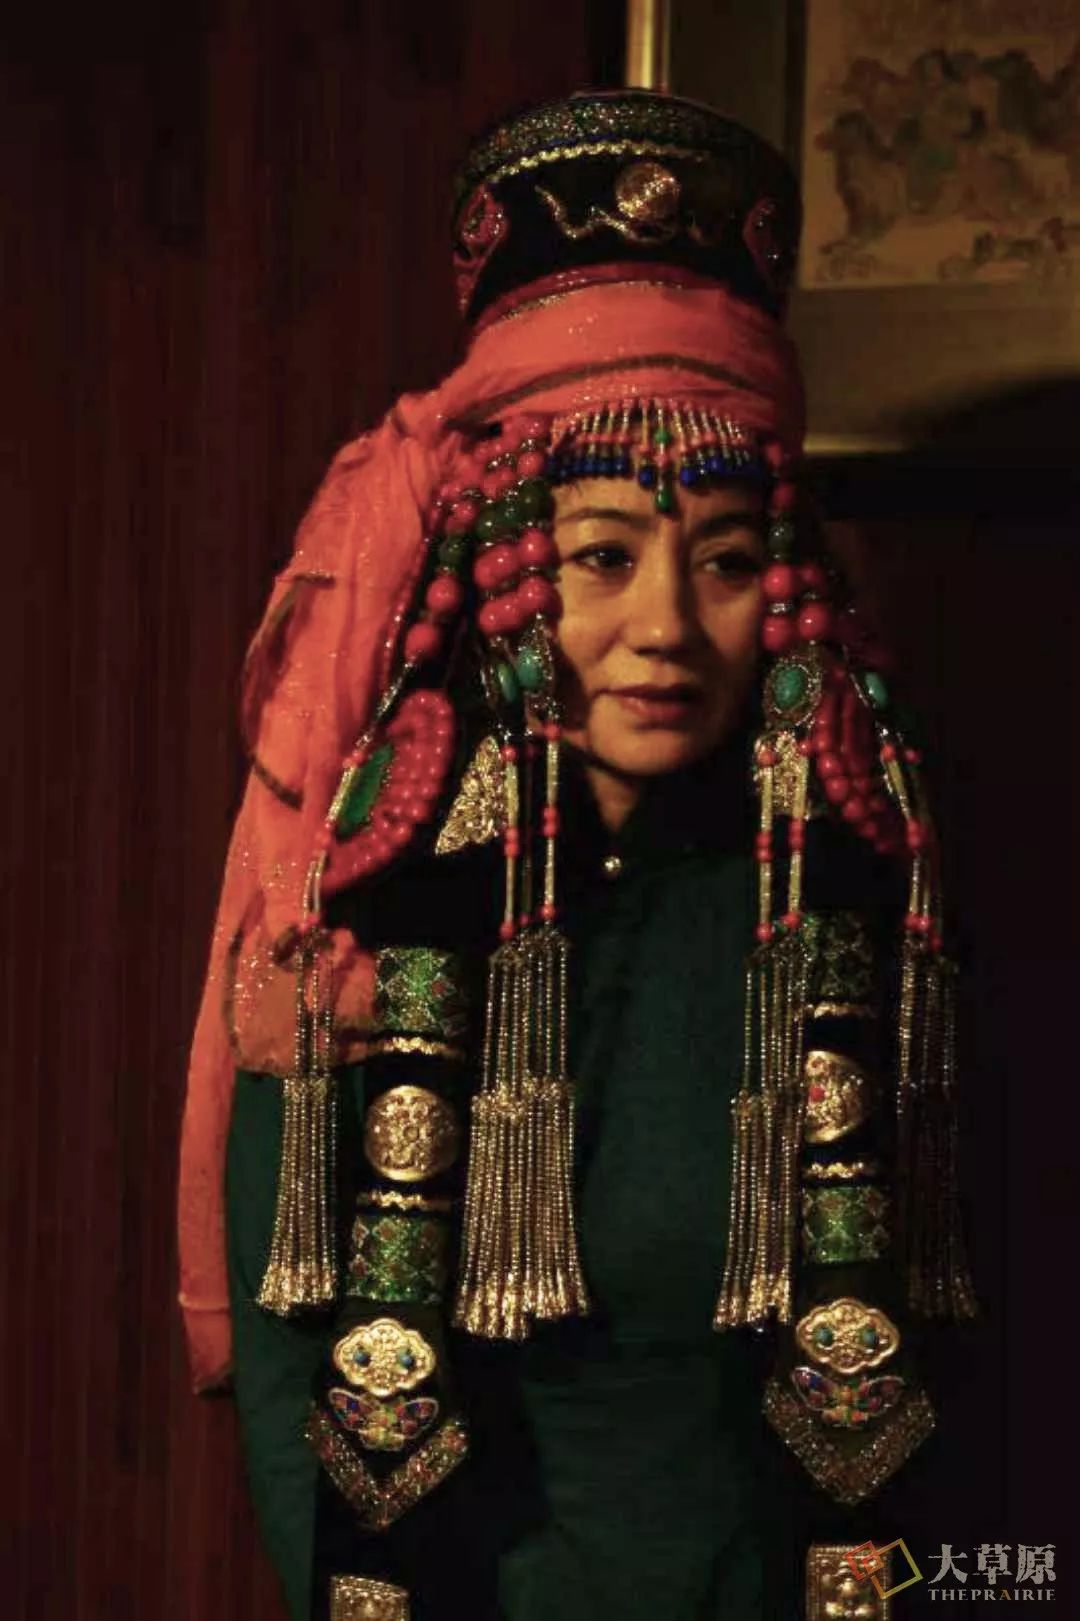 蒙古少女-中关村在线摄影论坛